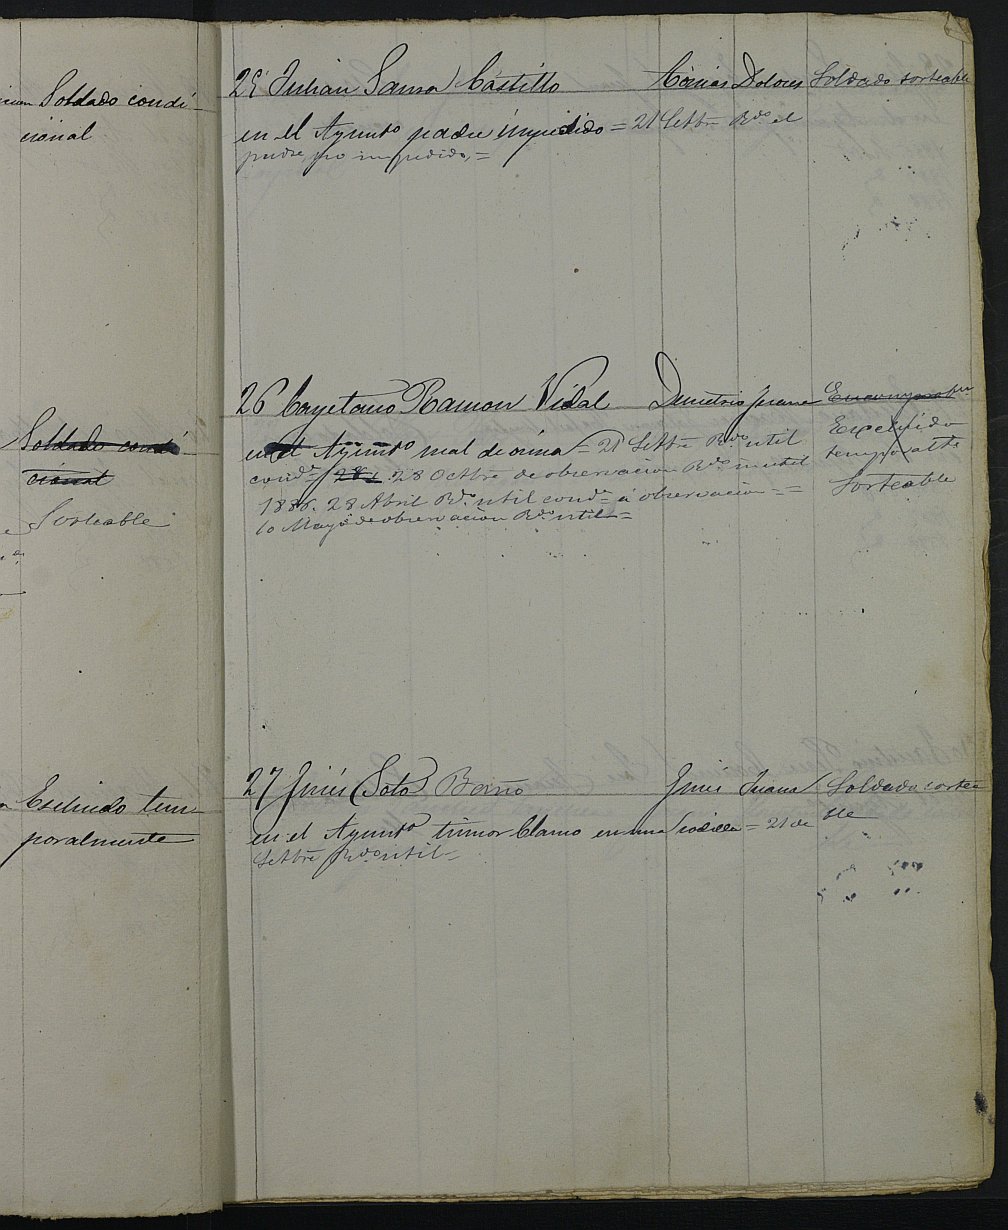 Relación de individuos declarados soldados e ingresados en Caja del 2ª reemplazo del Ayuntamiento de Torre Pacheco de 1885.